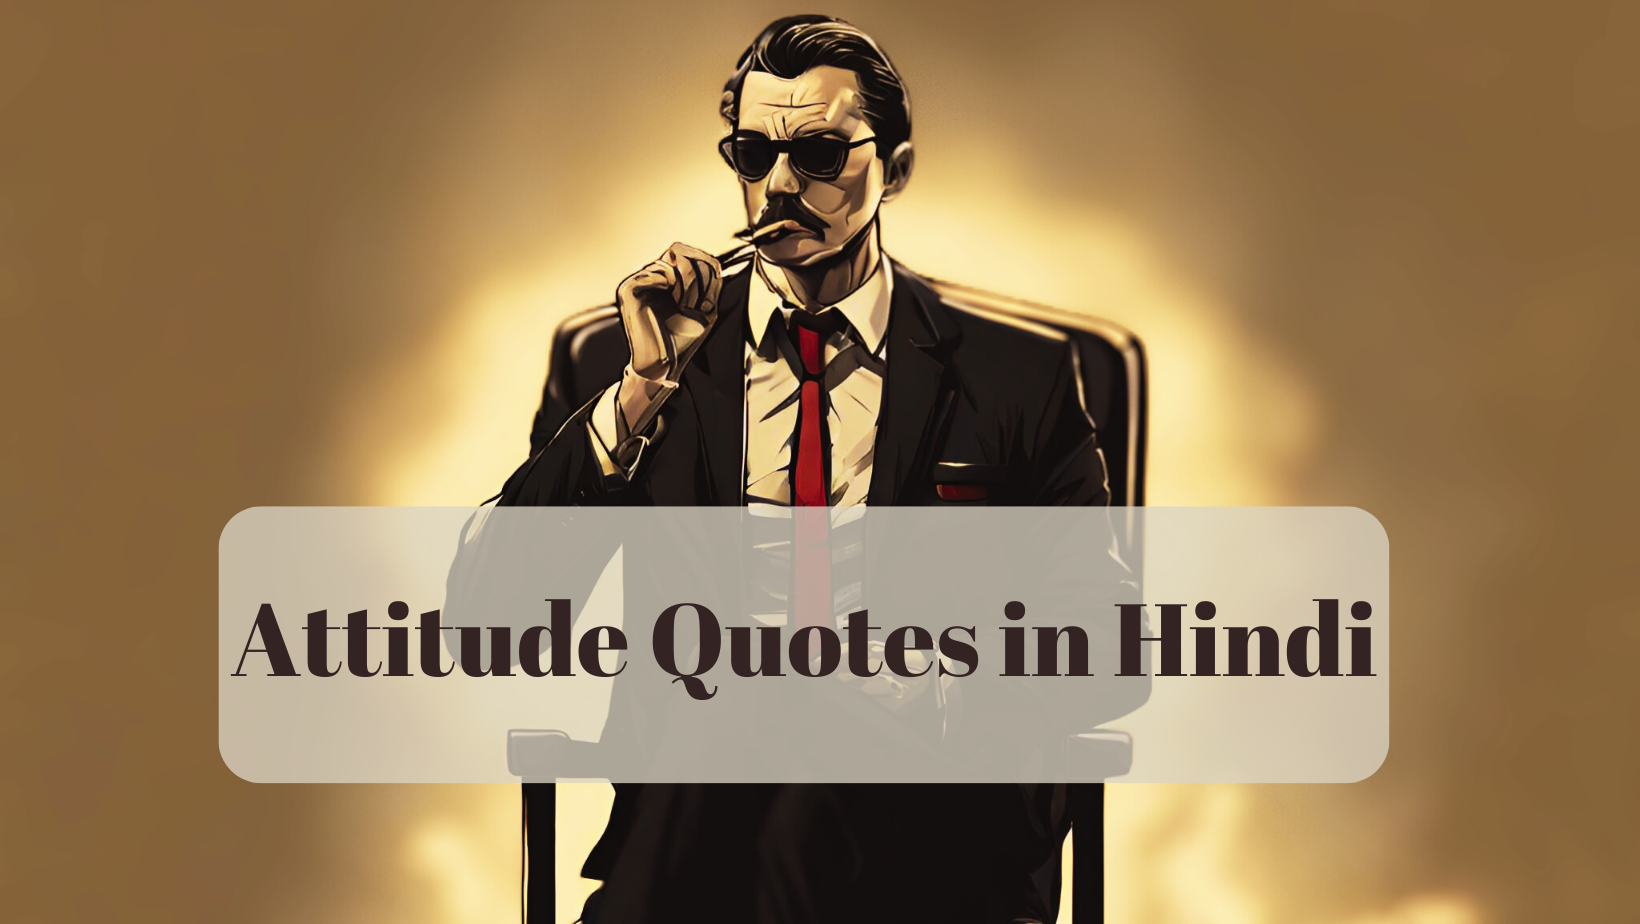 Attitude Quotes in HINDI - EnglishtoHindis